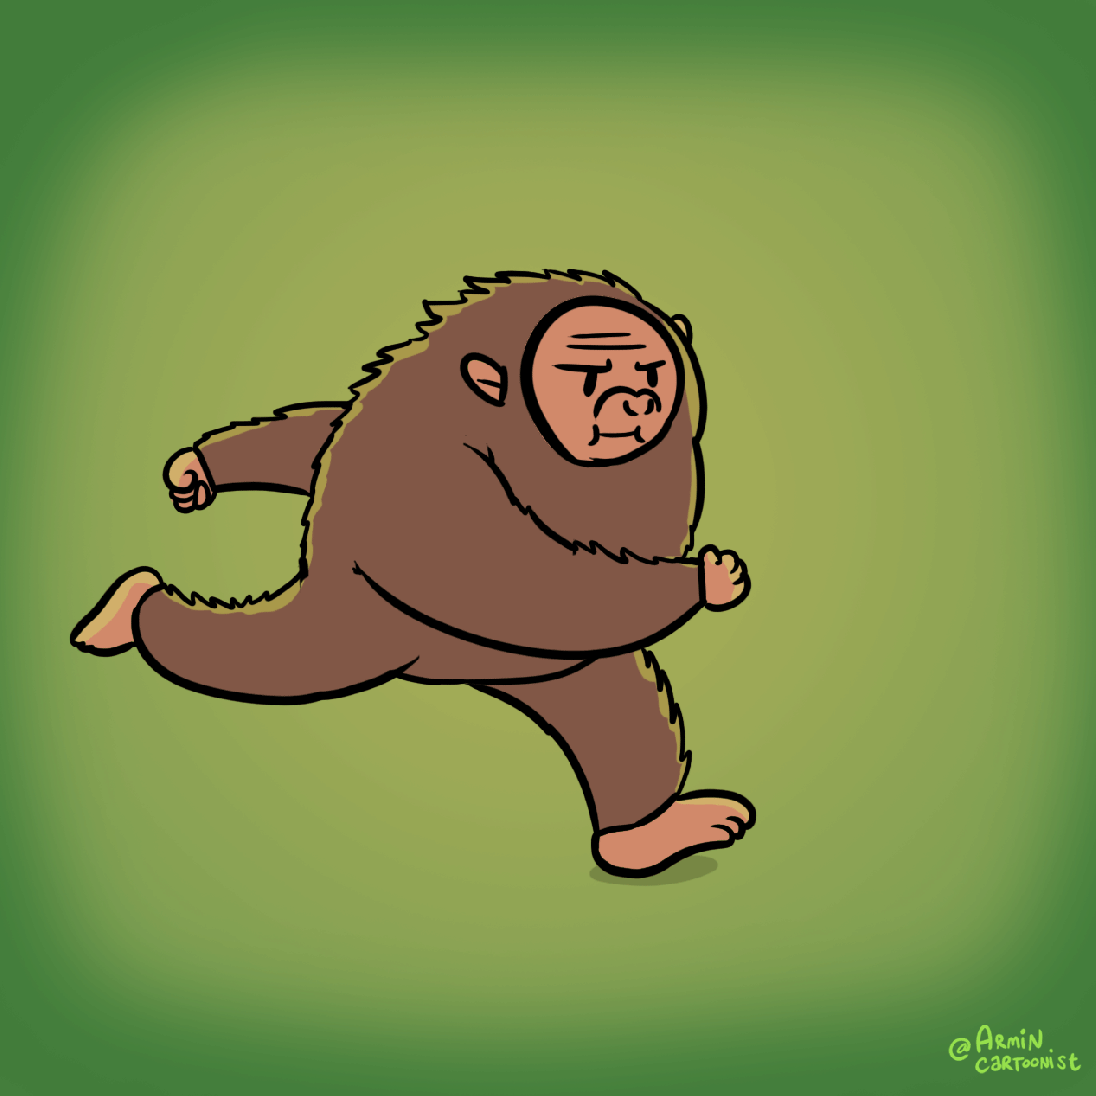 walk-cycle-monkey-man5